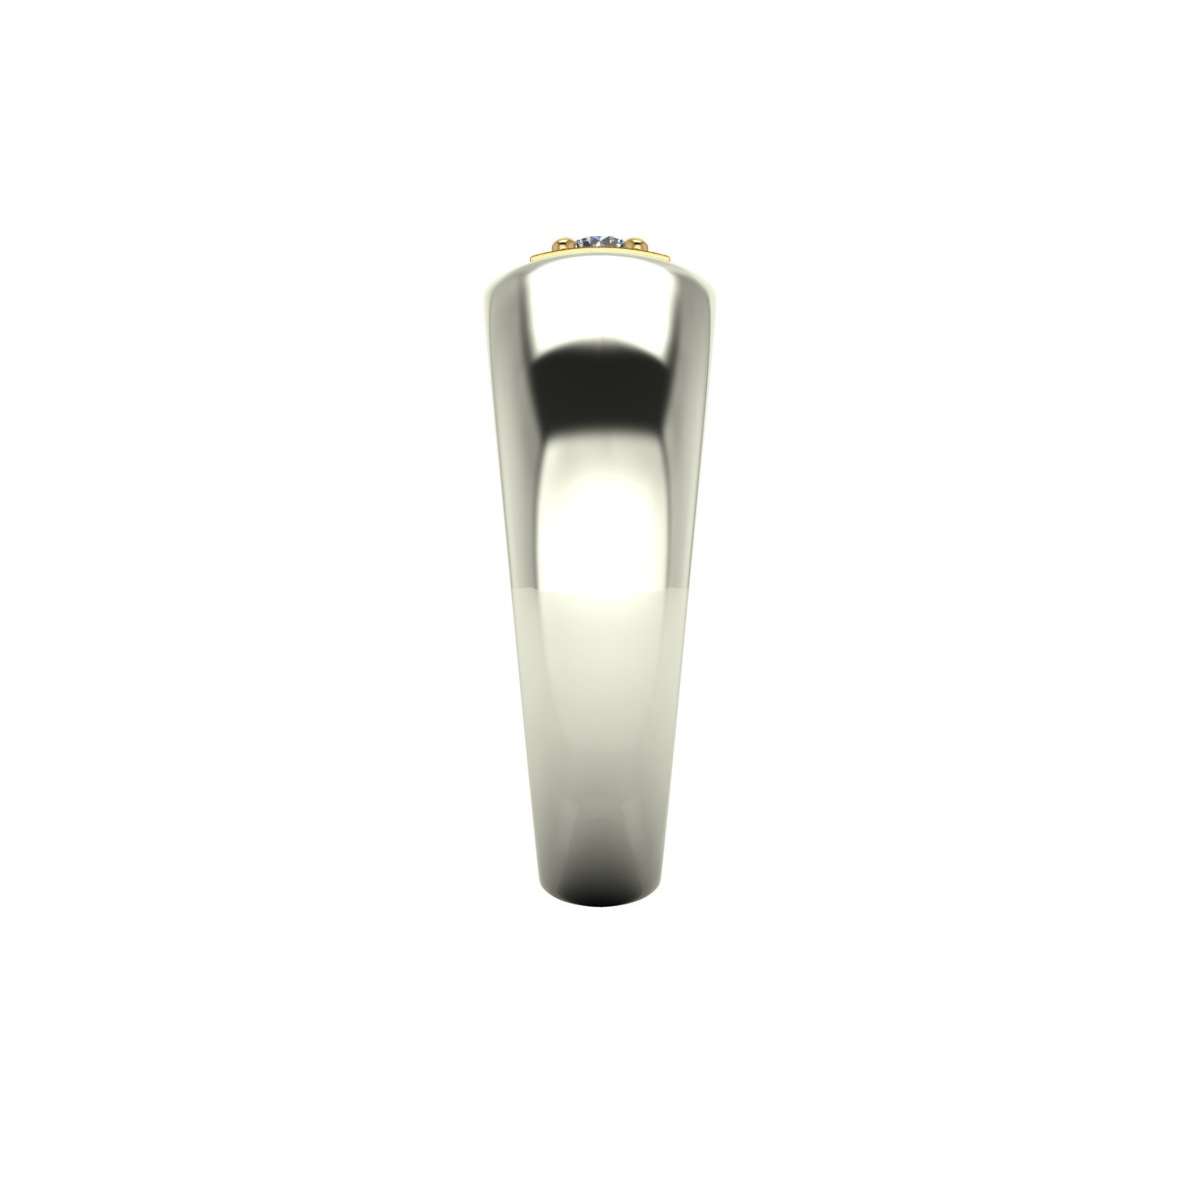 Anello solitario diamante certificato IGI carati 0,20 G-VS1 